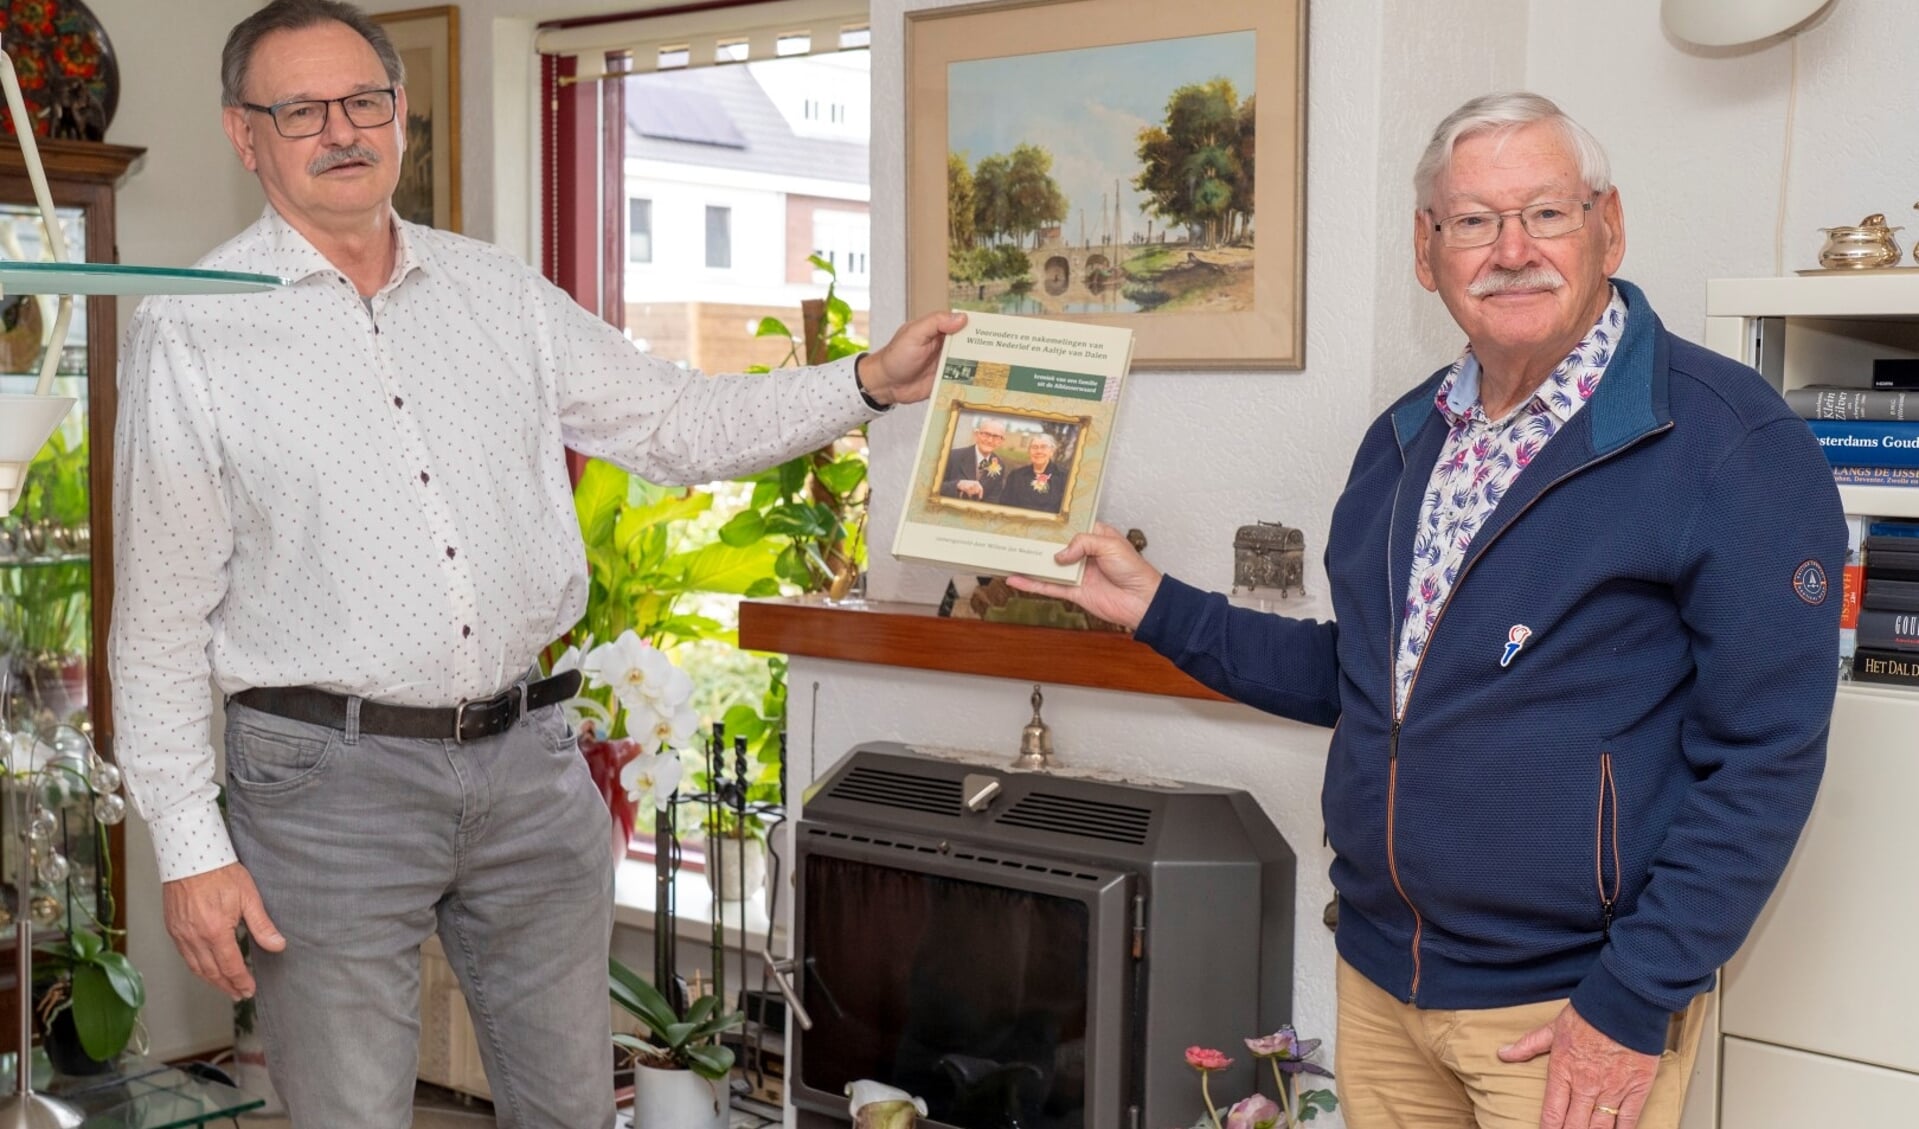 • De overhandiging van de eerste familiekroniek met links Willem Jan Nederlof en rechts Theo Jansen.